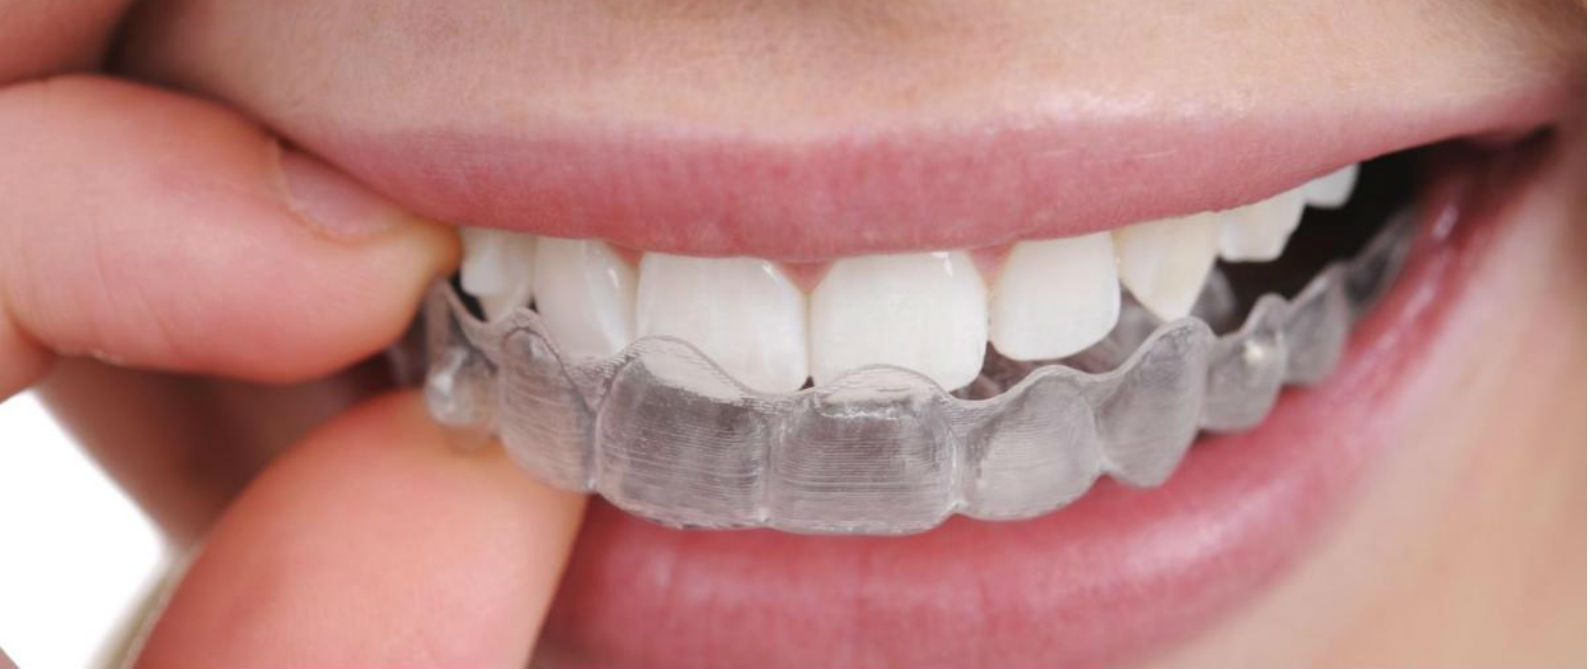 Tips contra el rechinado de dientes